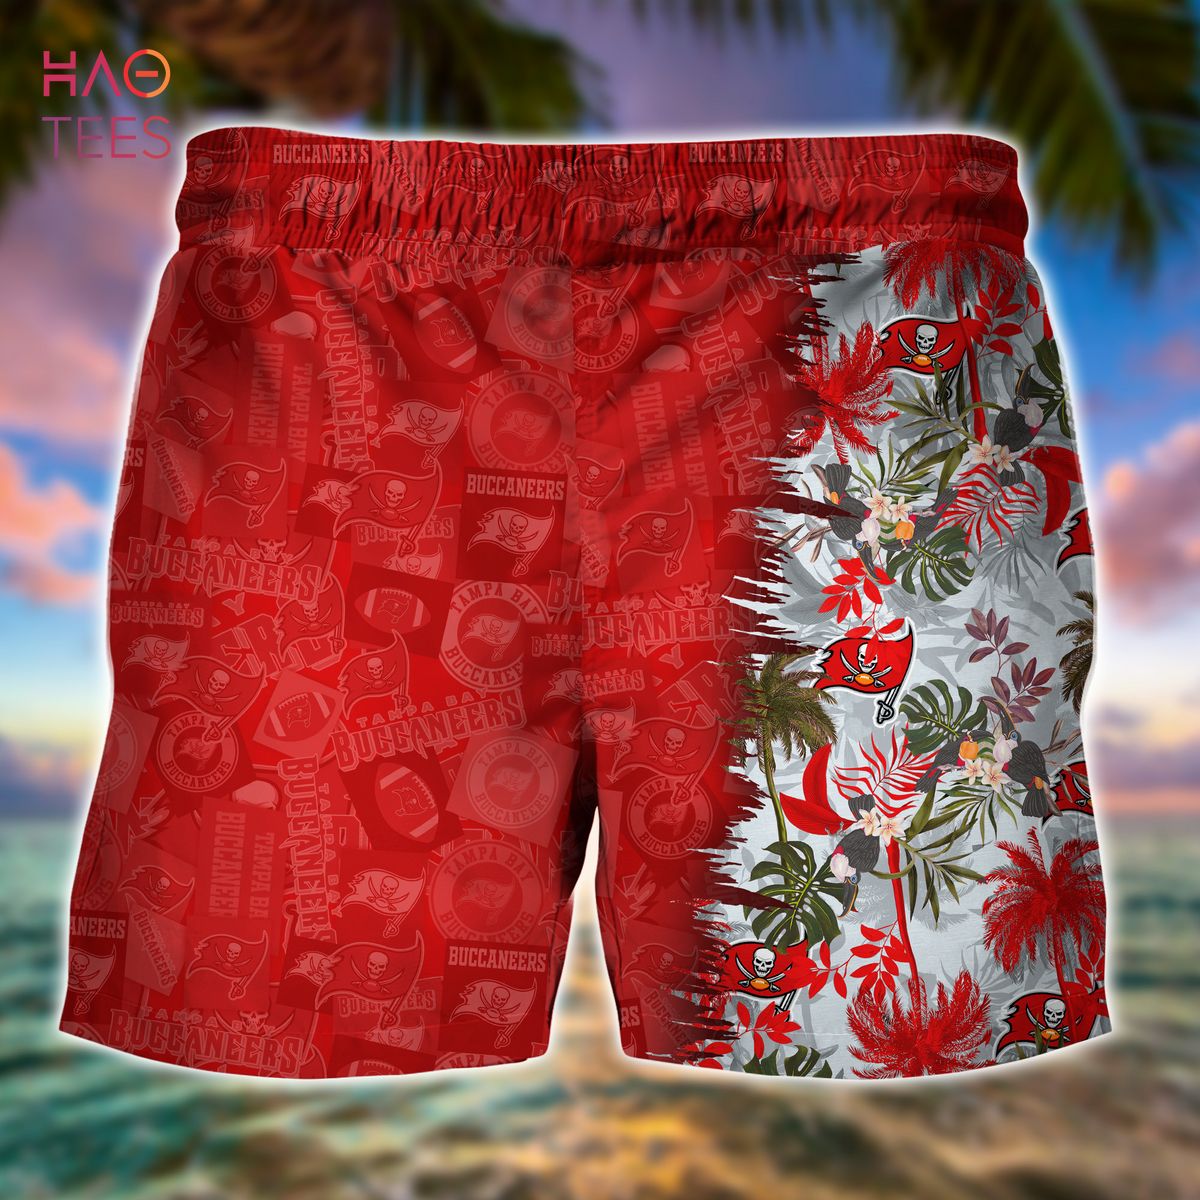 HOT Tampa Bay Buccaneers Hawaiian Shirt Limited Edition